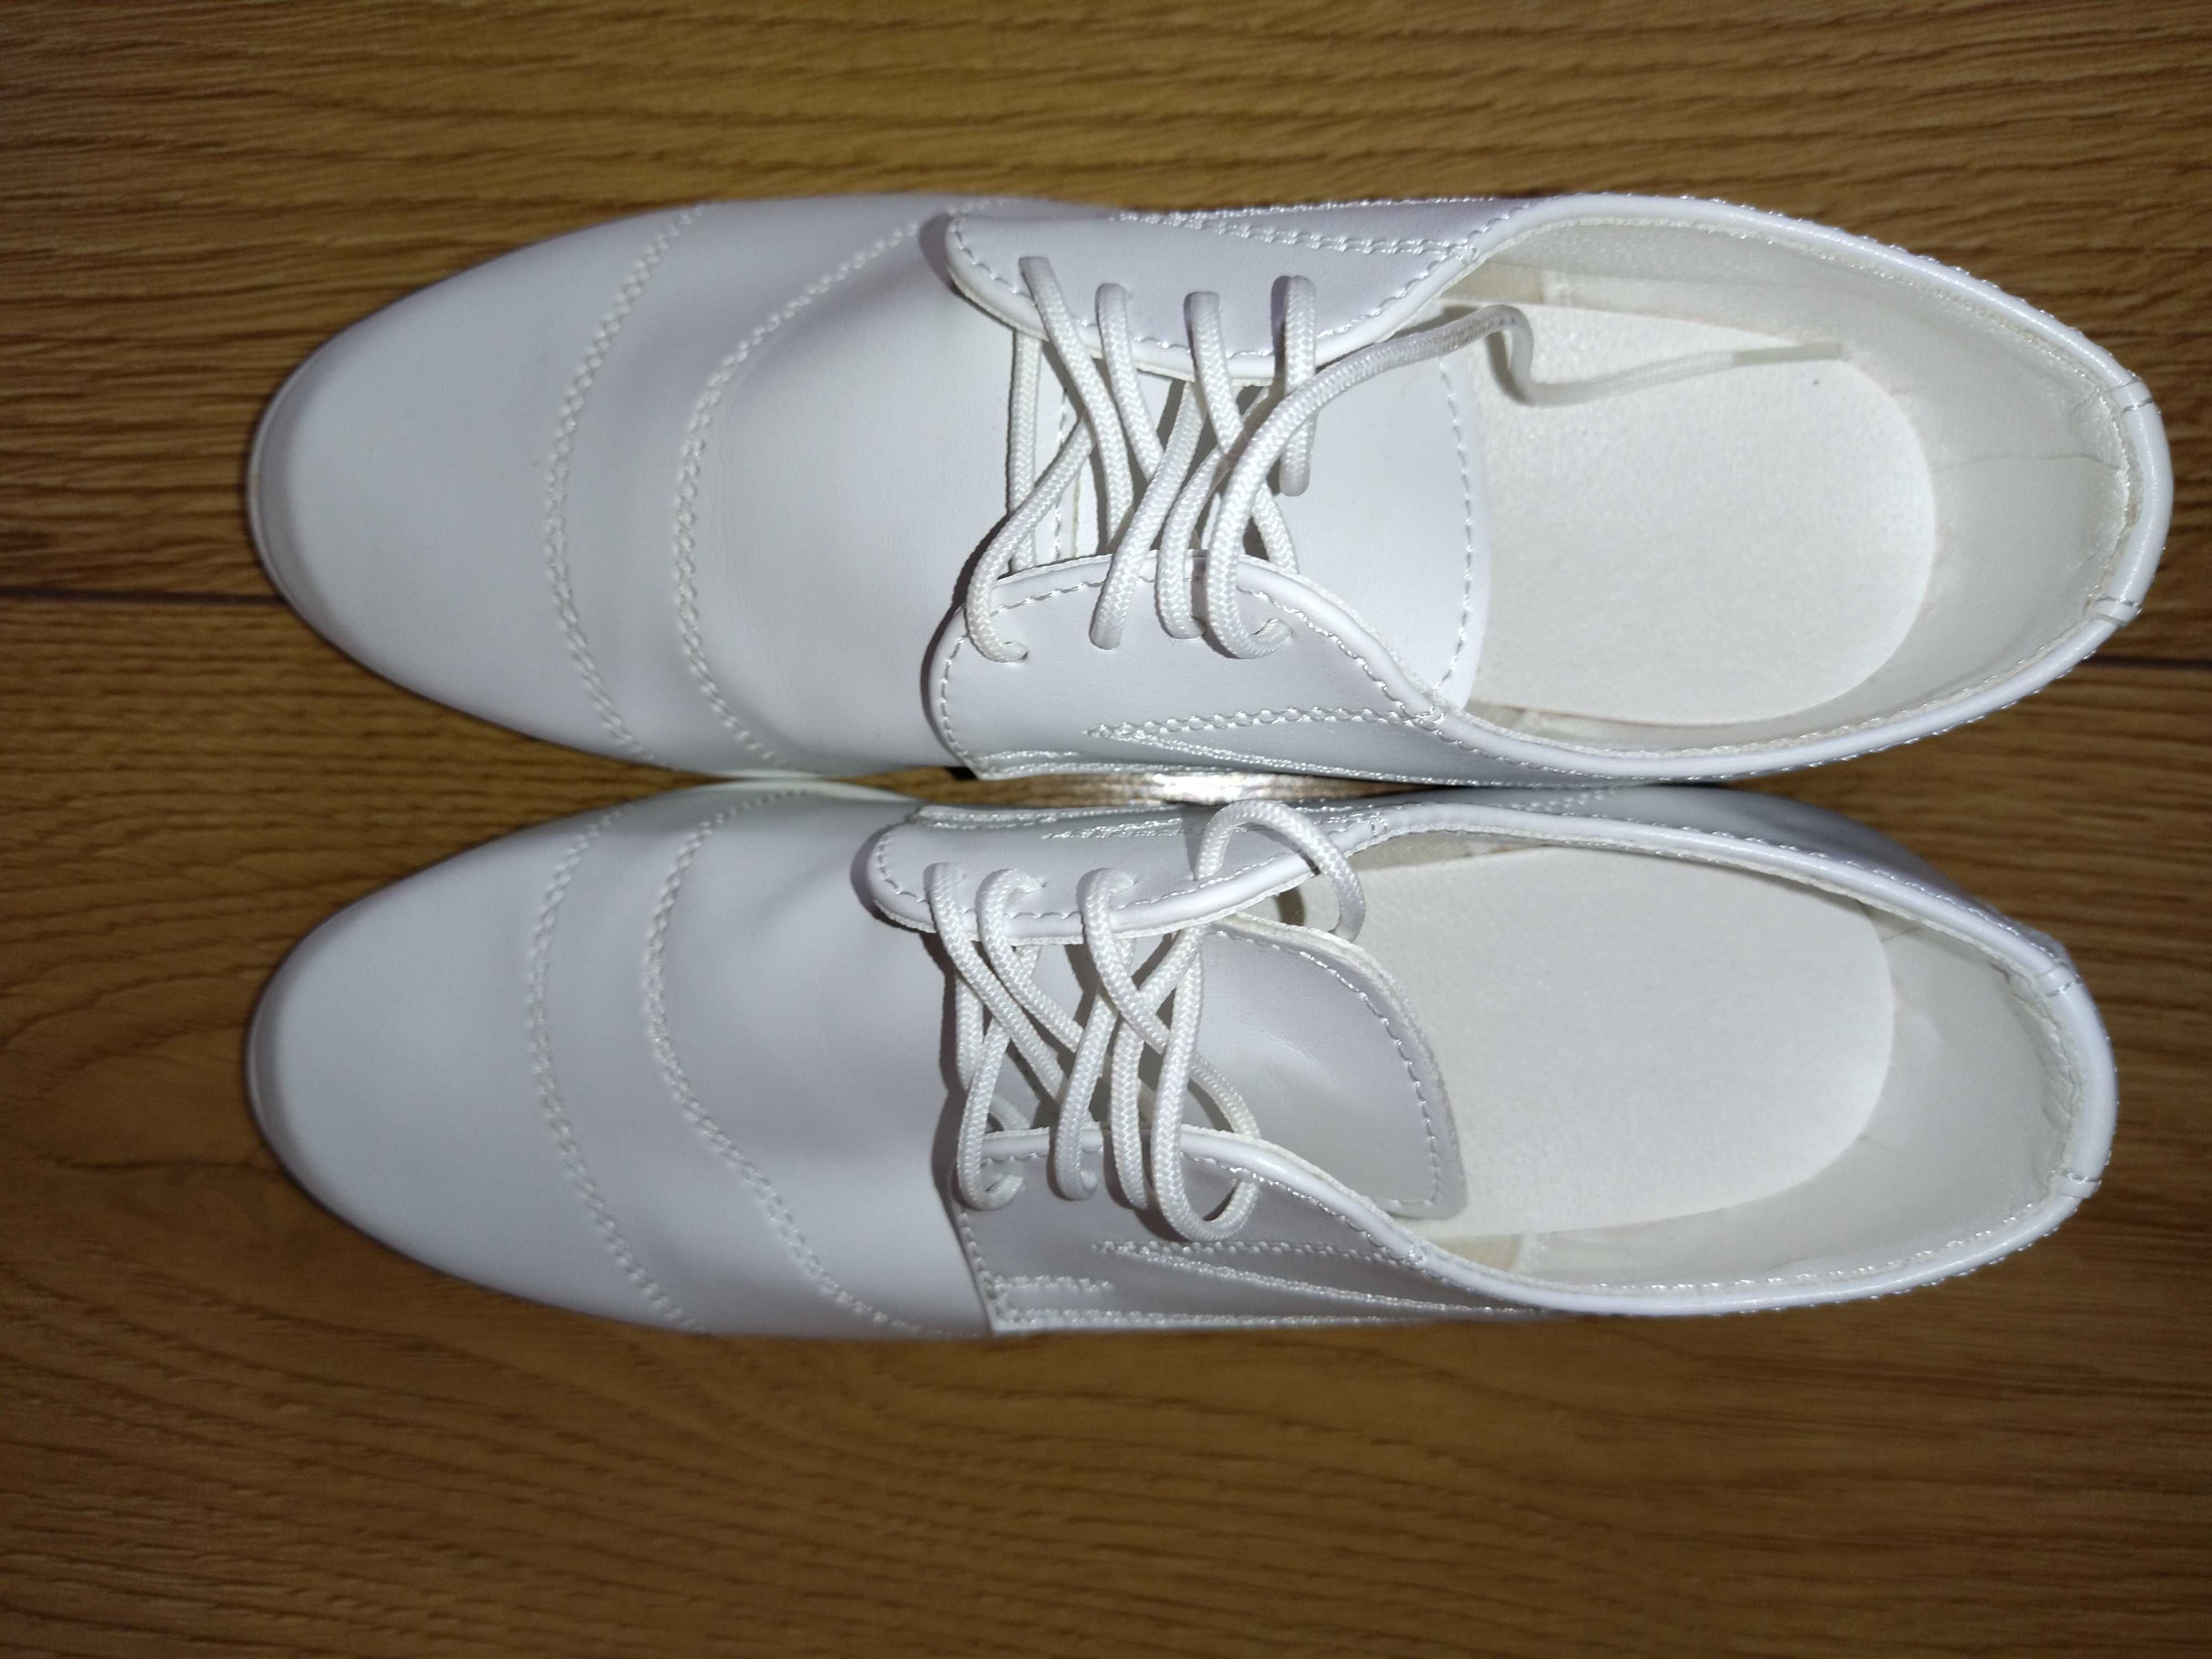 Buty komunijne białe dla chłopca 30/33 dł. wkł. 21 cm